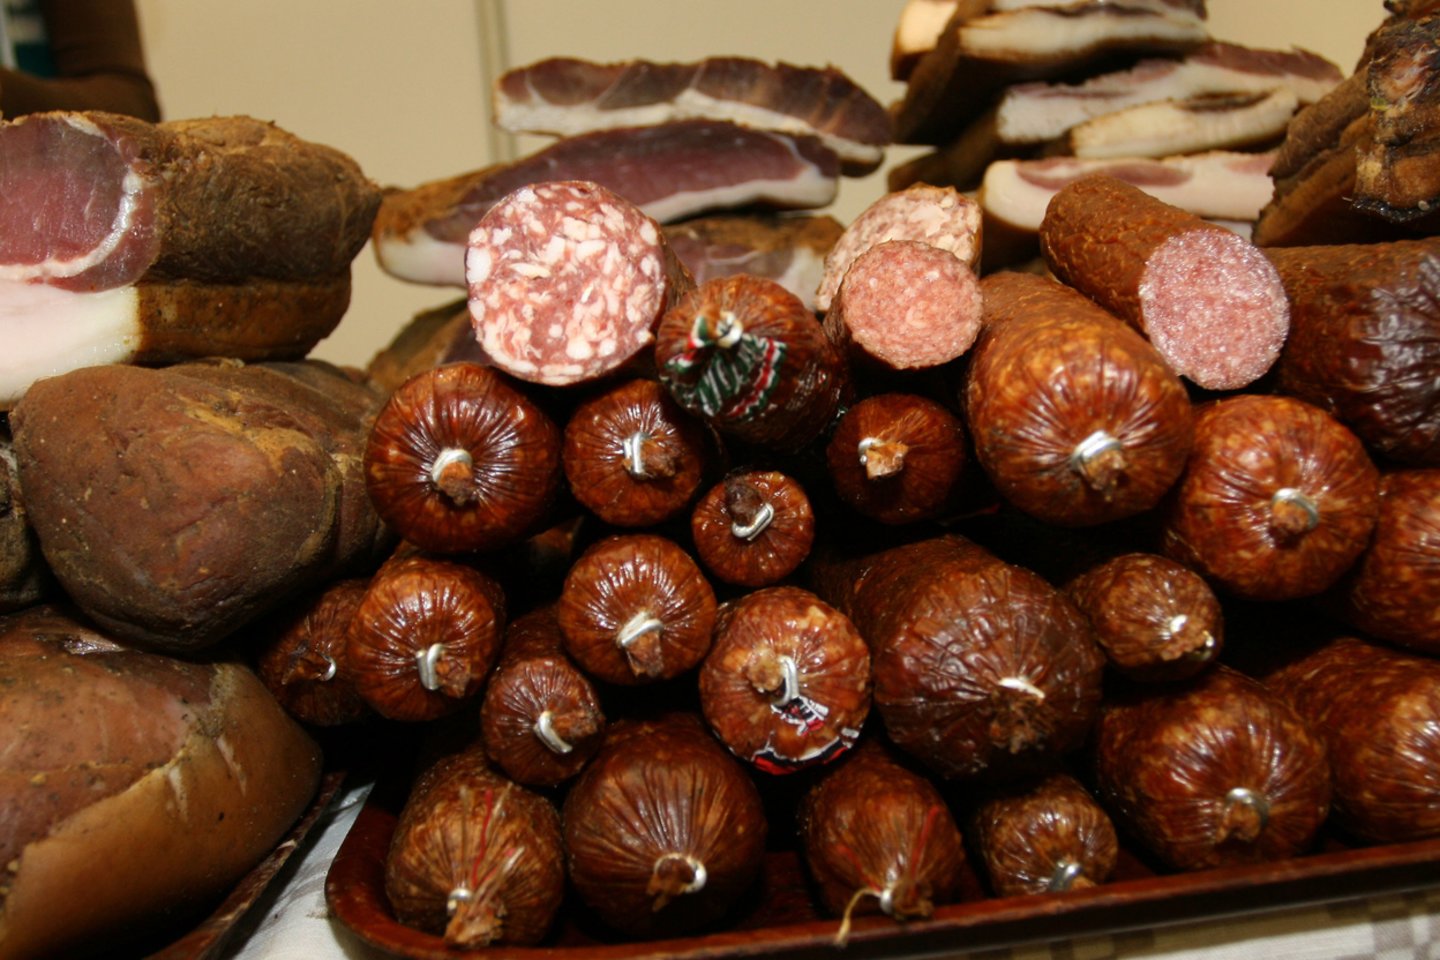 Ikiteisminio tyrimo, kurį organizavo Šiaulių apygardos prokuratūra, metu nustatyta, kad nuteistieji realizavo dešrelių, sardelių ir kitų mėsos produktų, kurių vertė siekia daugiau nei 222 tūkst. eurų.<br>M.Patašiaus nuotr.